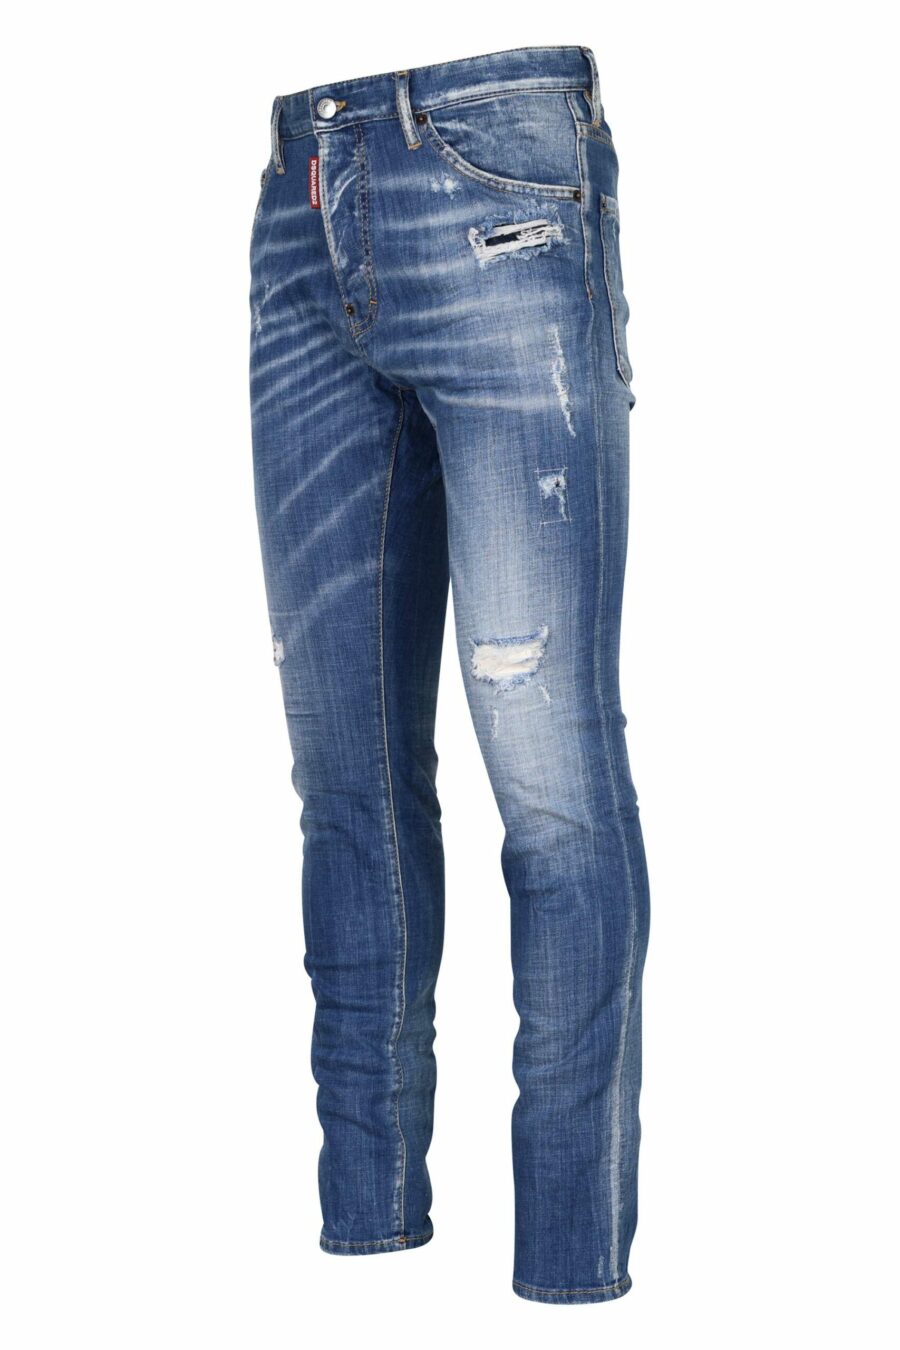 Pantalon bleu clair "cool guy jean" semi-fendu et semi-usé - 8054148311414 1 à l'échelle